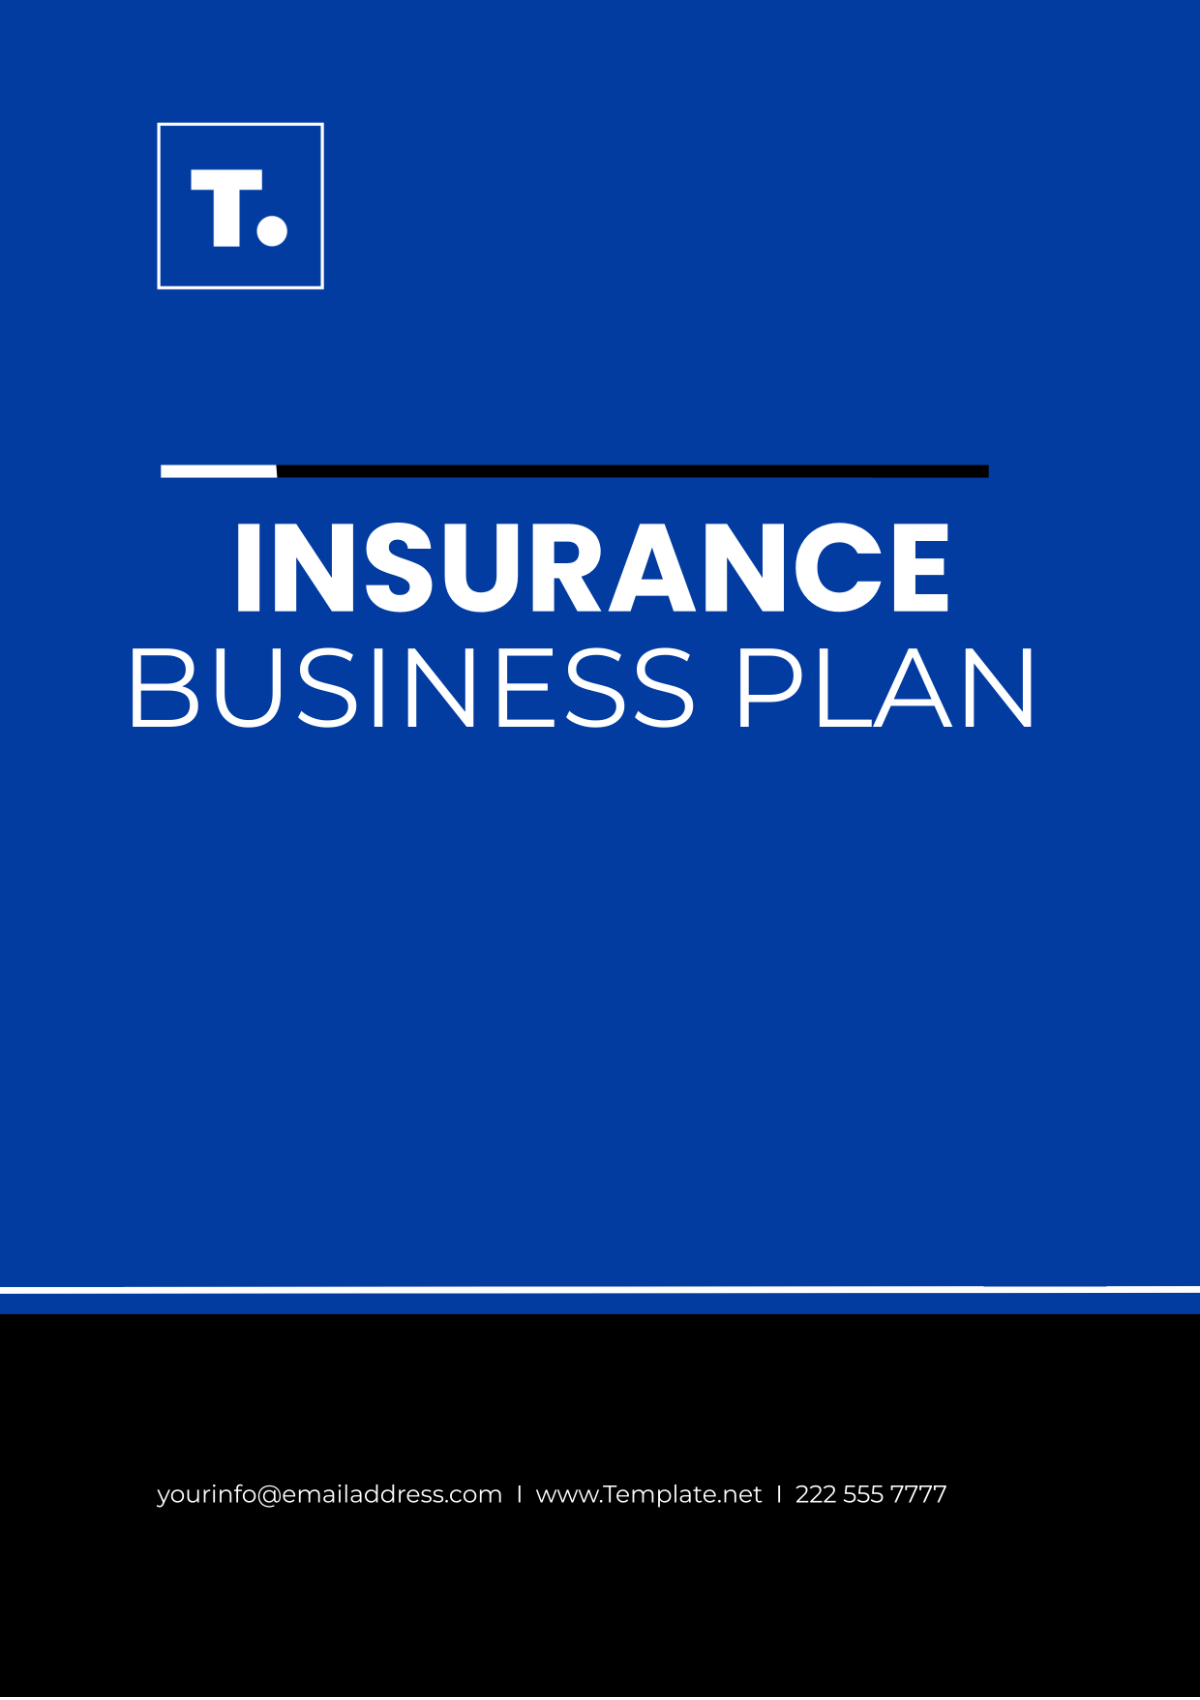 Insurance Business Plan Template